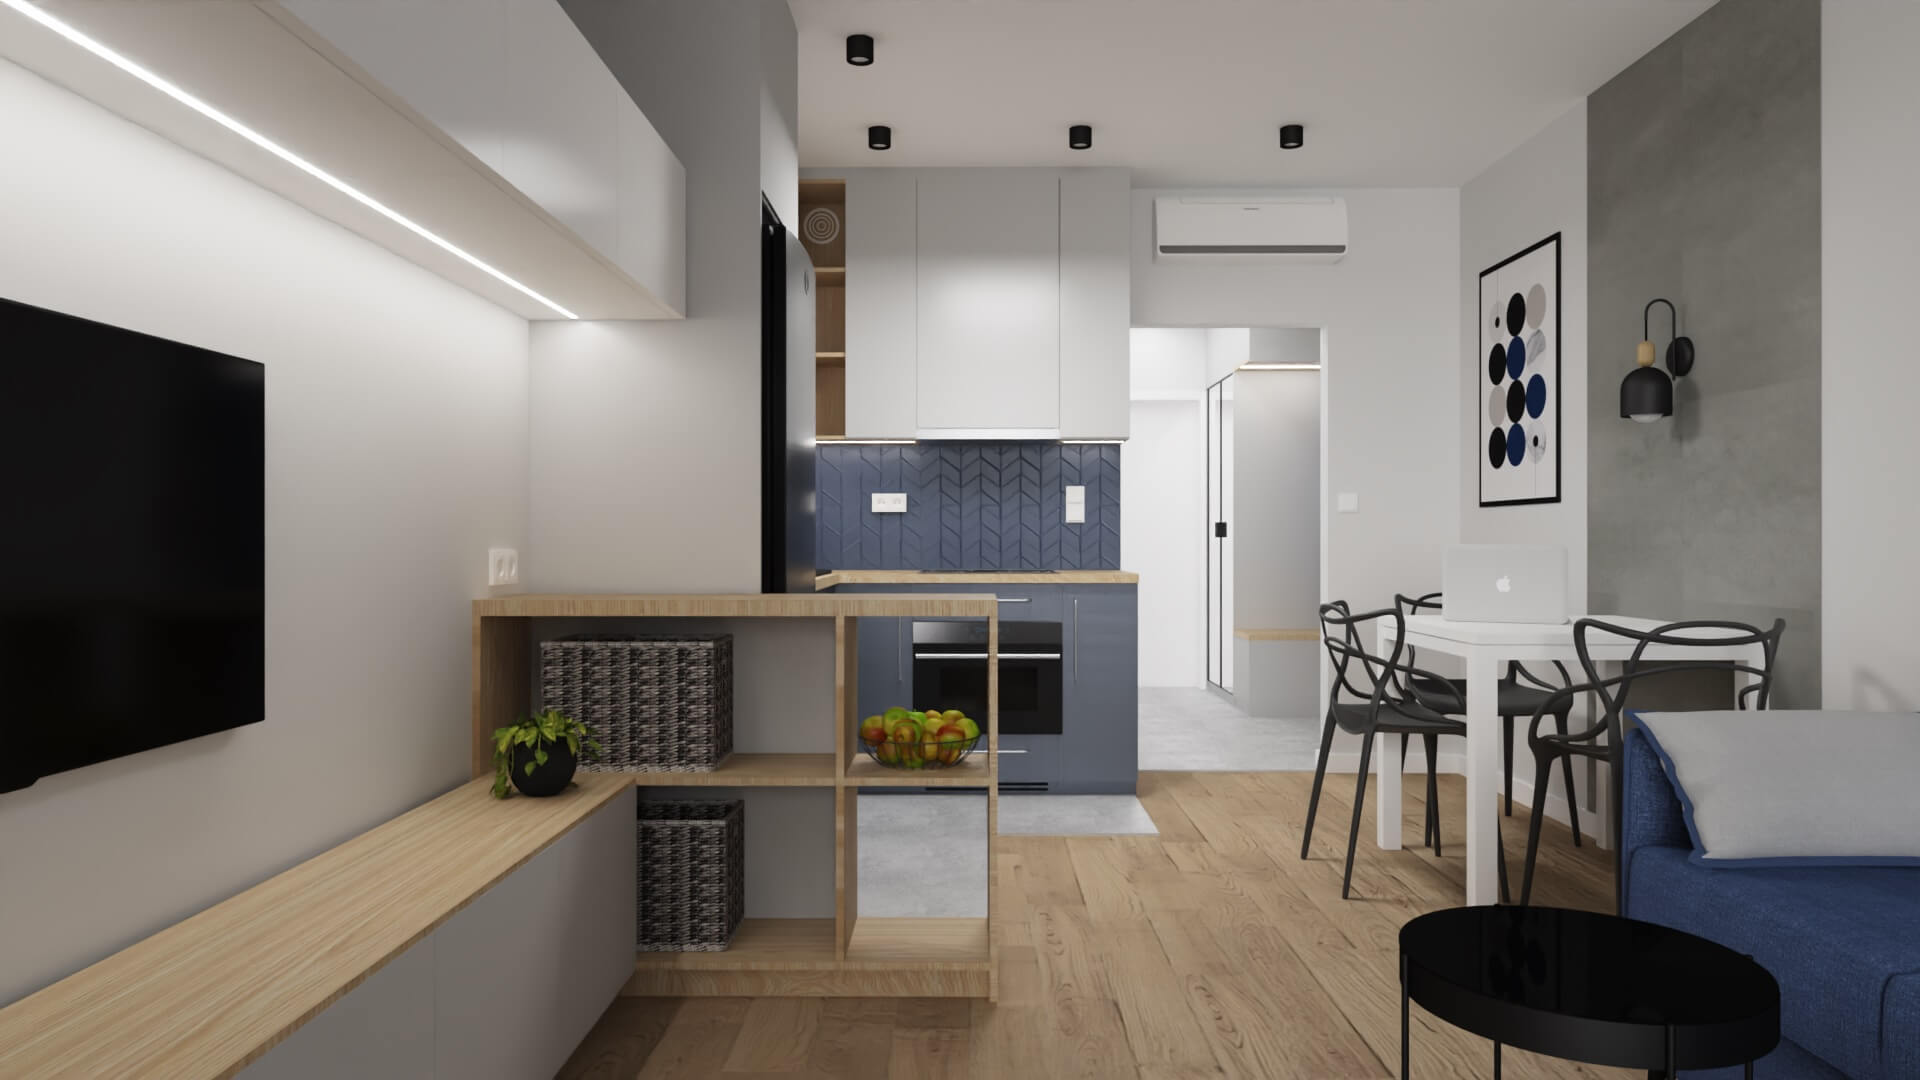 projekt wnętrza mieszkania na wynajem - wyspa między kuchnią a salonem